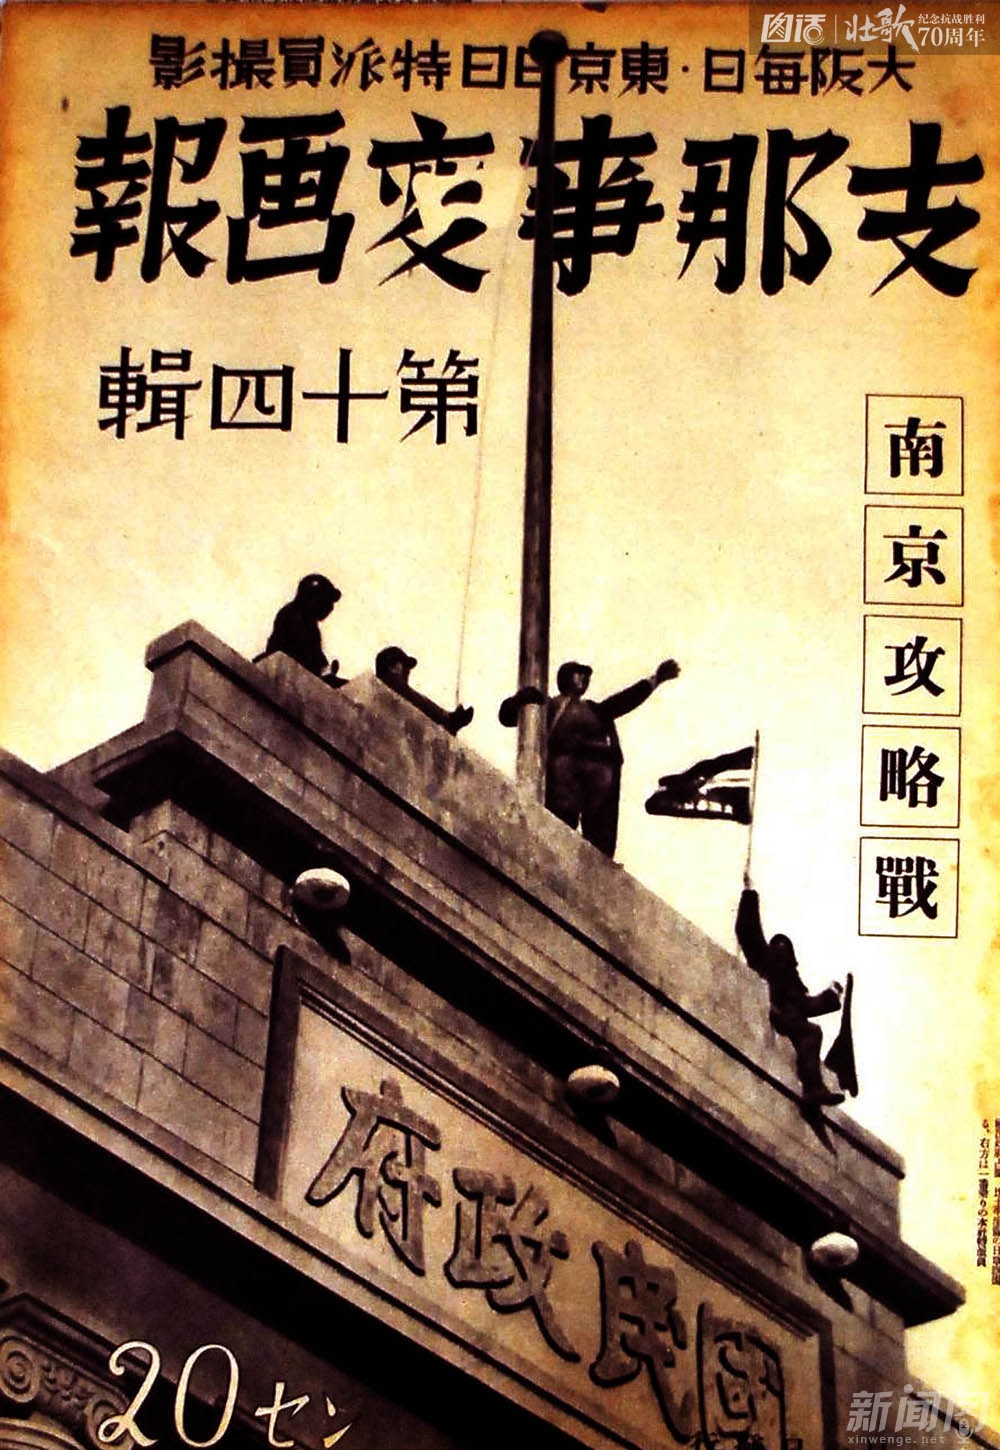 图为日军占领南京后《支那事变画报》的封面。